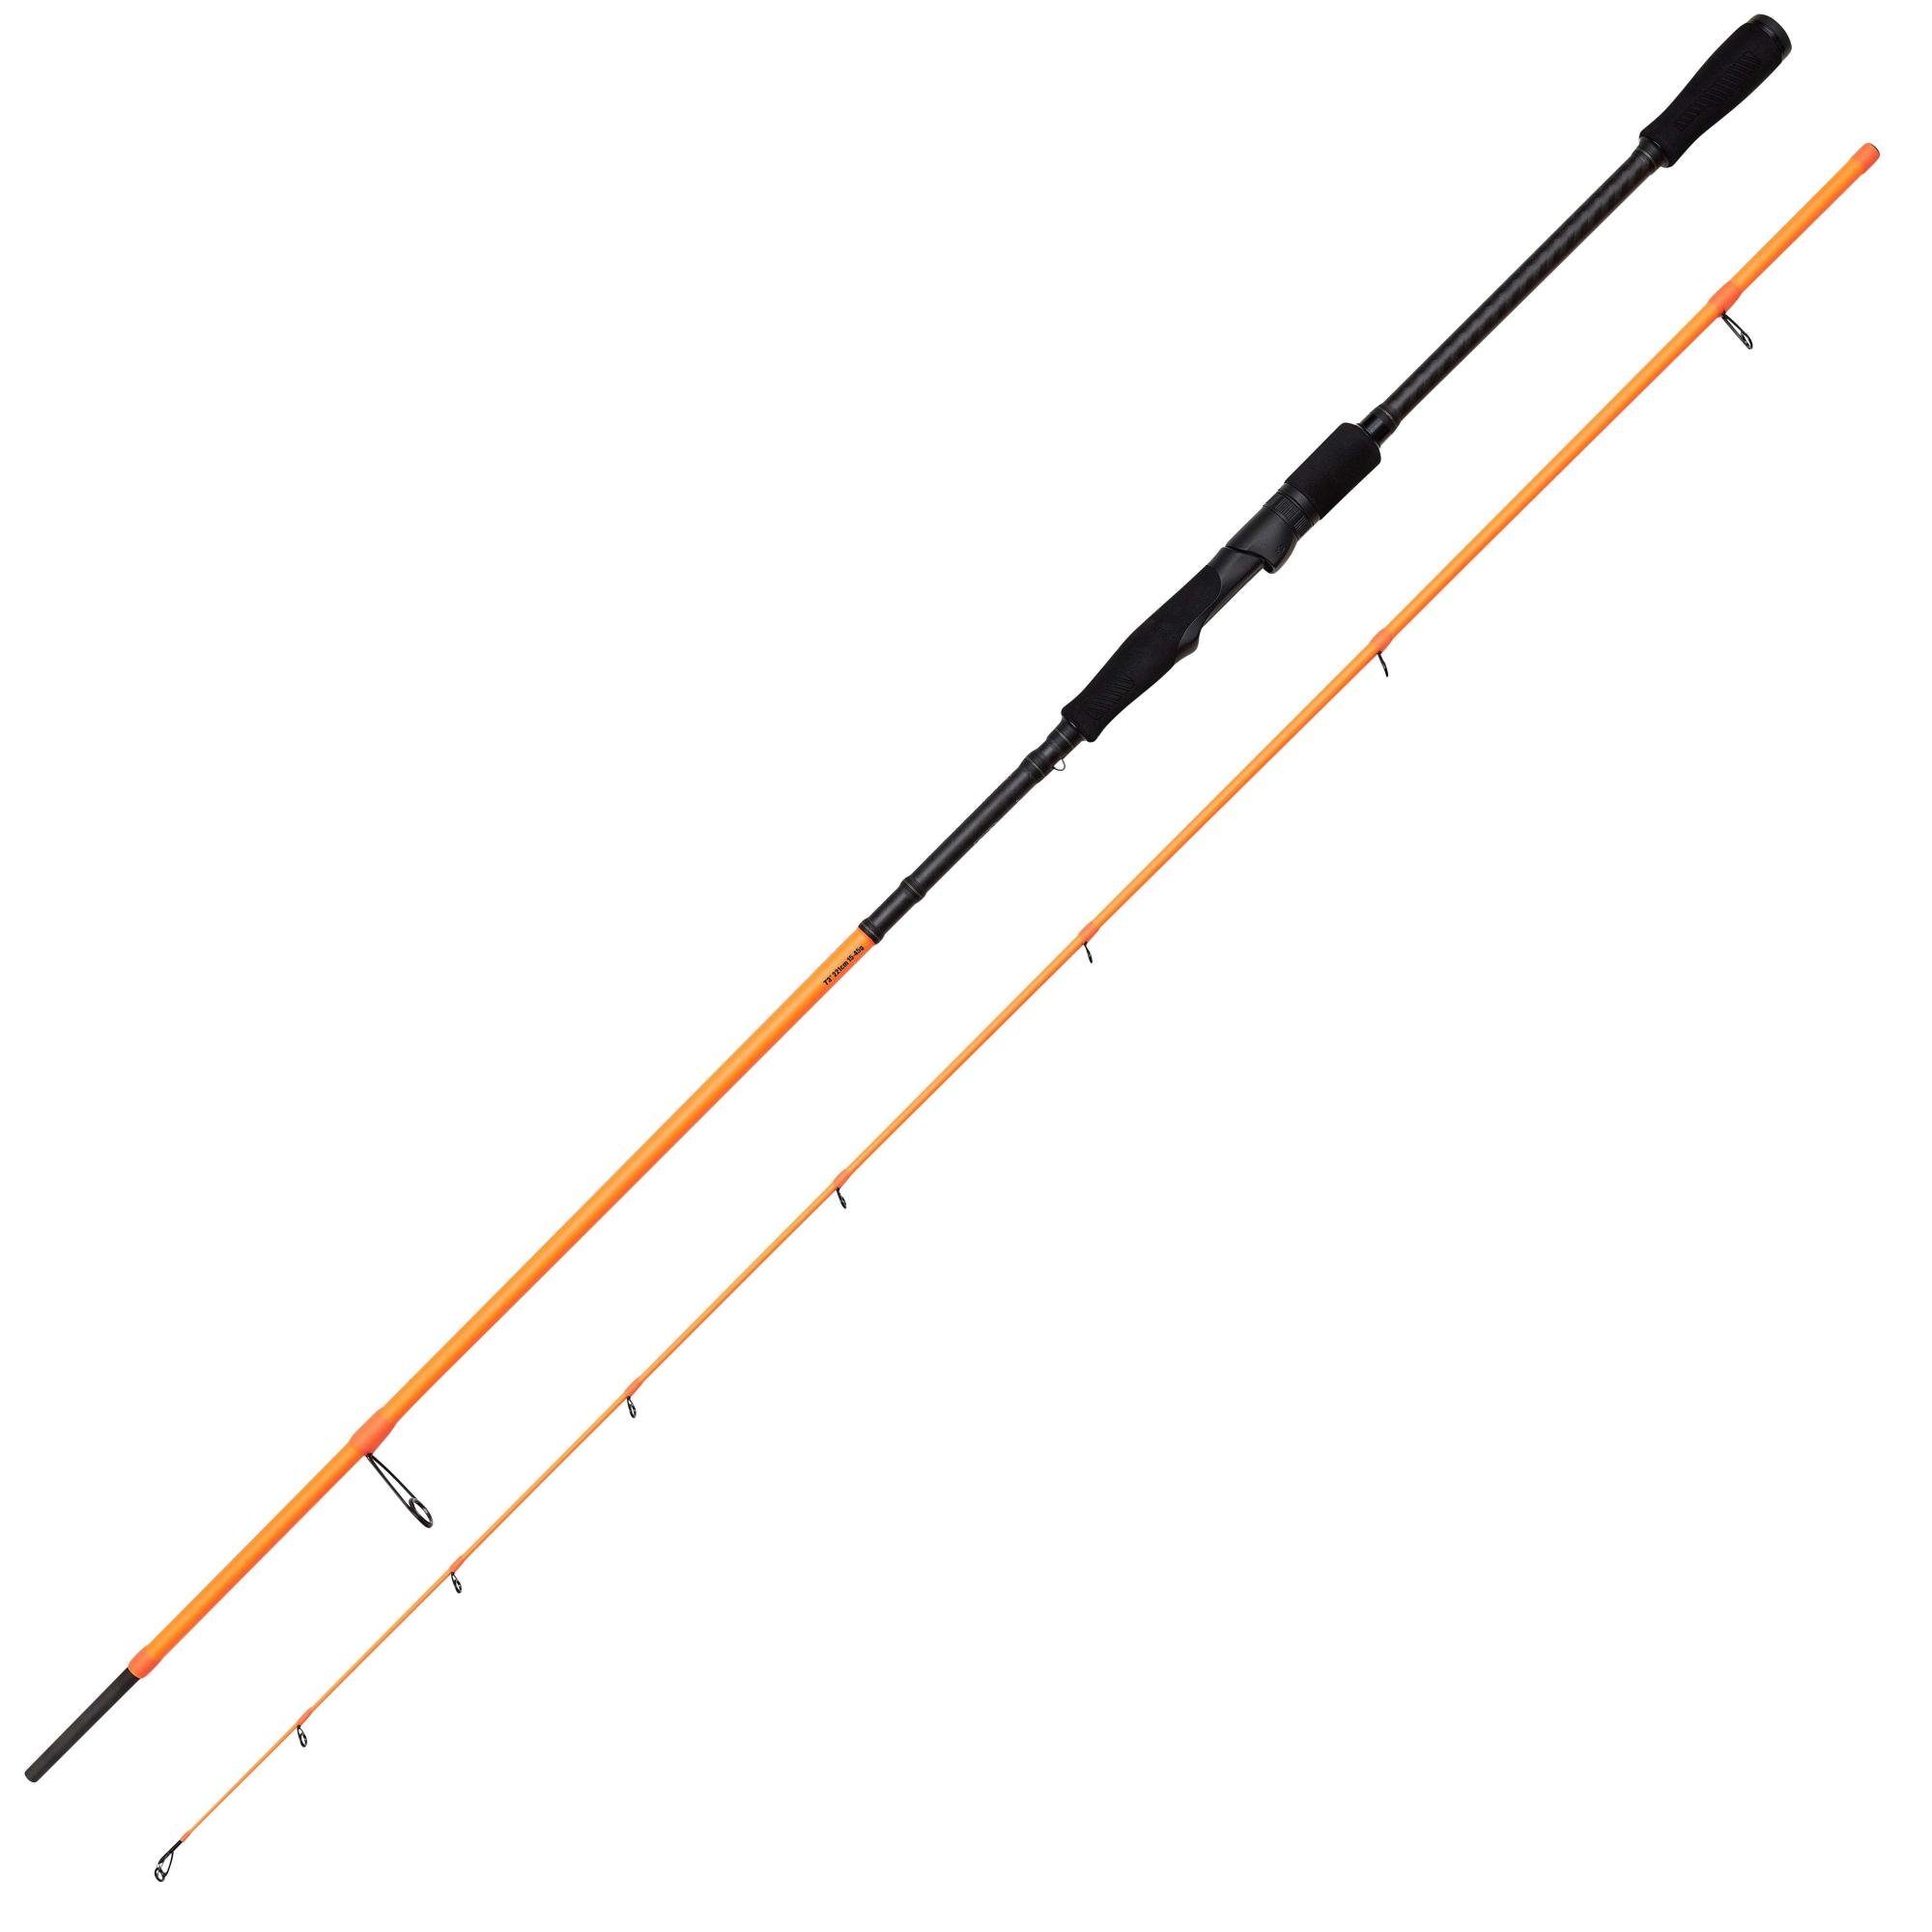 Savage Gear Spinnrute Orange Rod Spin 2,21m 2,13m 2,69m LTD ein ausbalanciert Game Perfekt für Angelruten, Gefühl WG_15-45g optimales Medium 2,51m